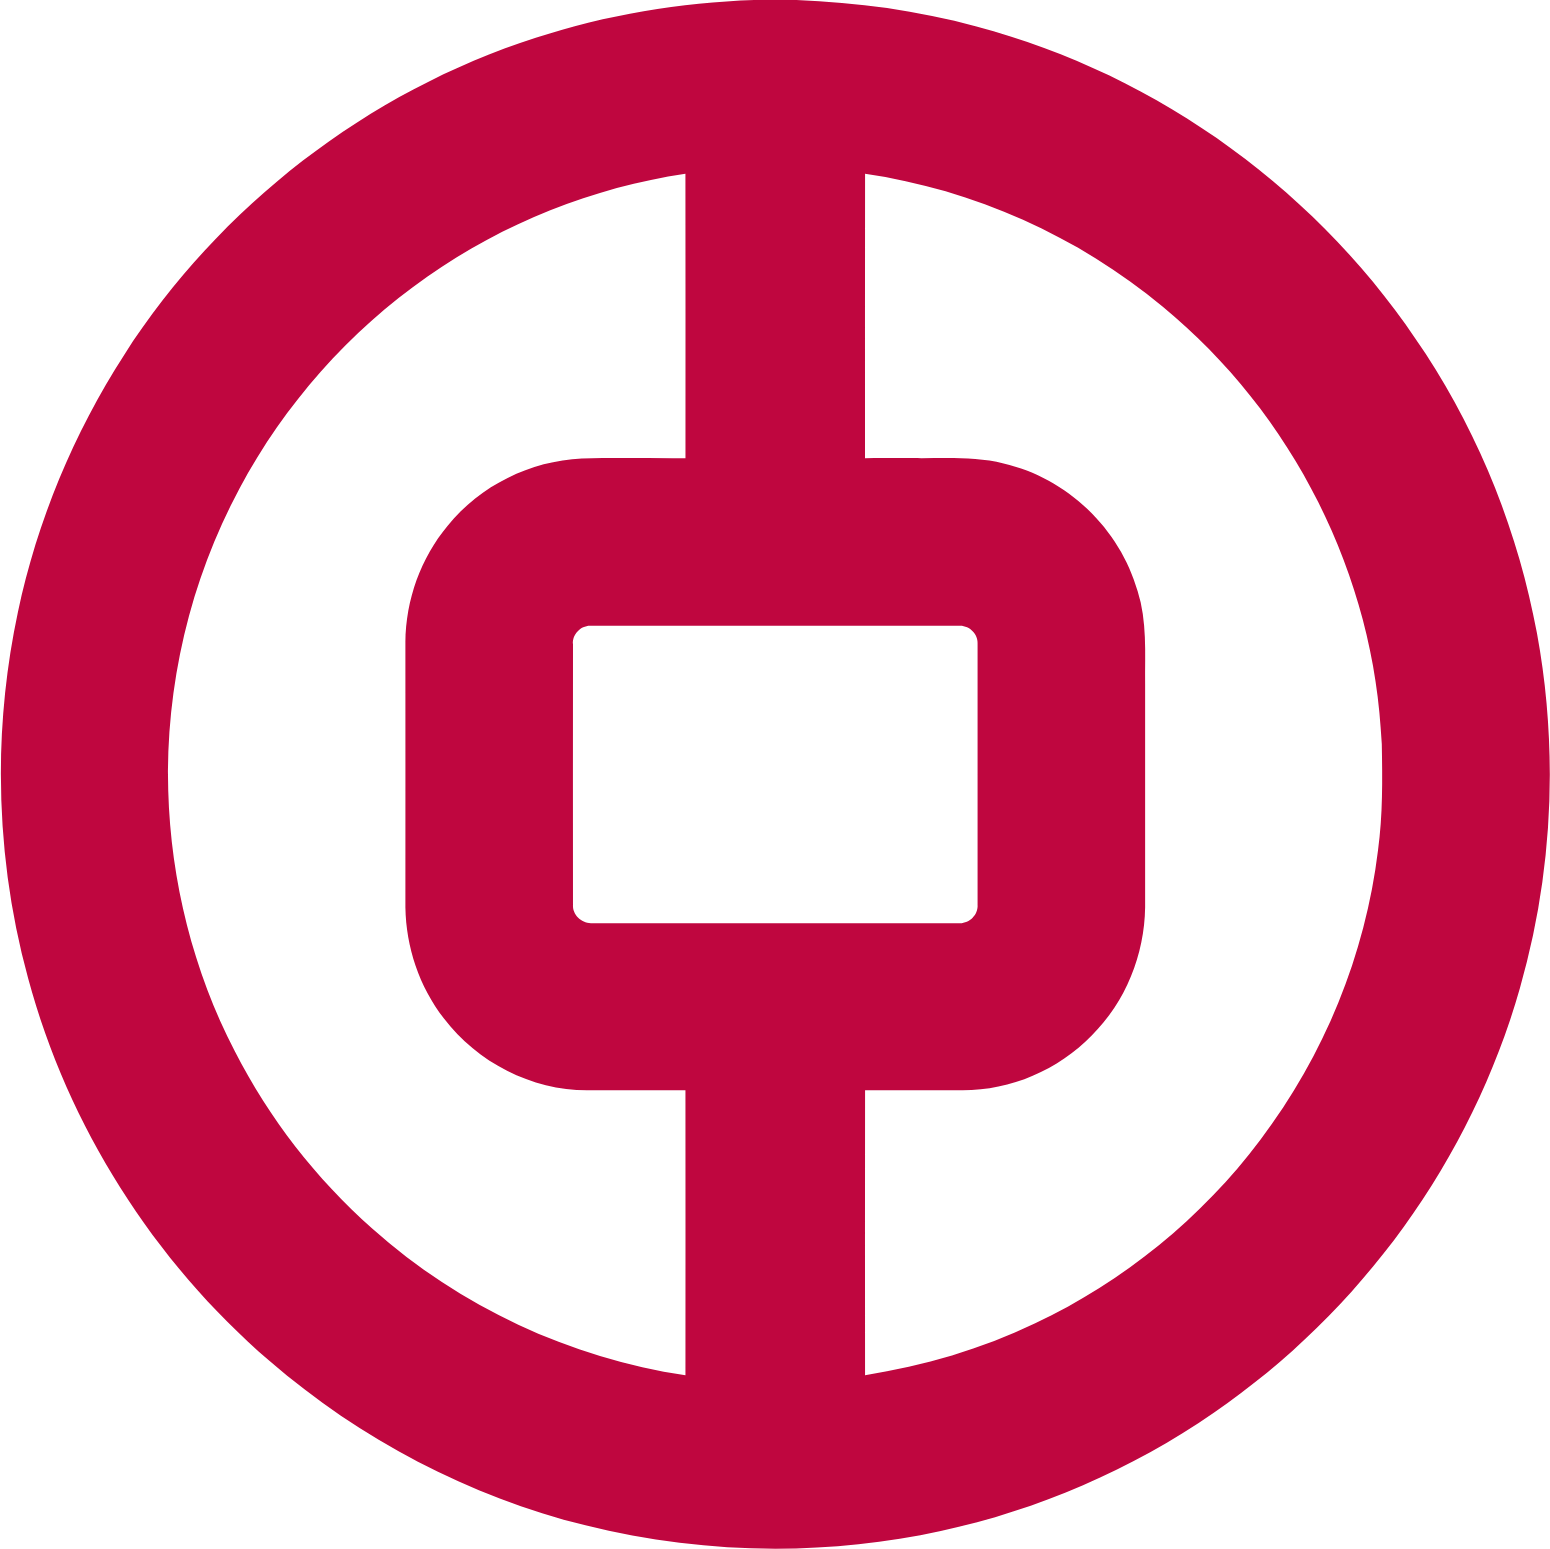 Bank of China (Hong Kong) logo (PNG transparent)